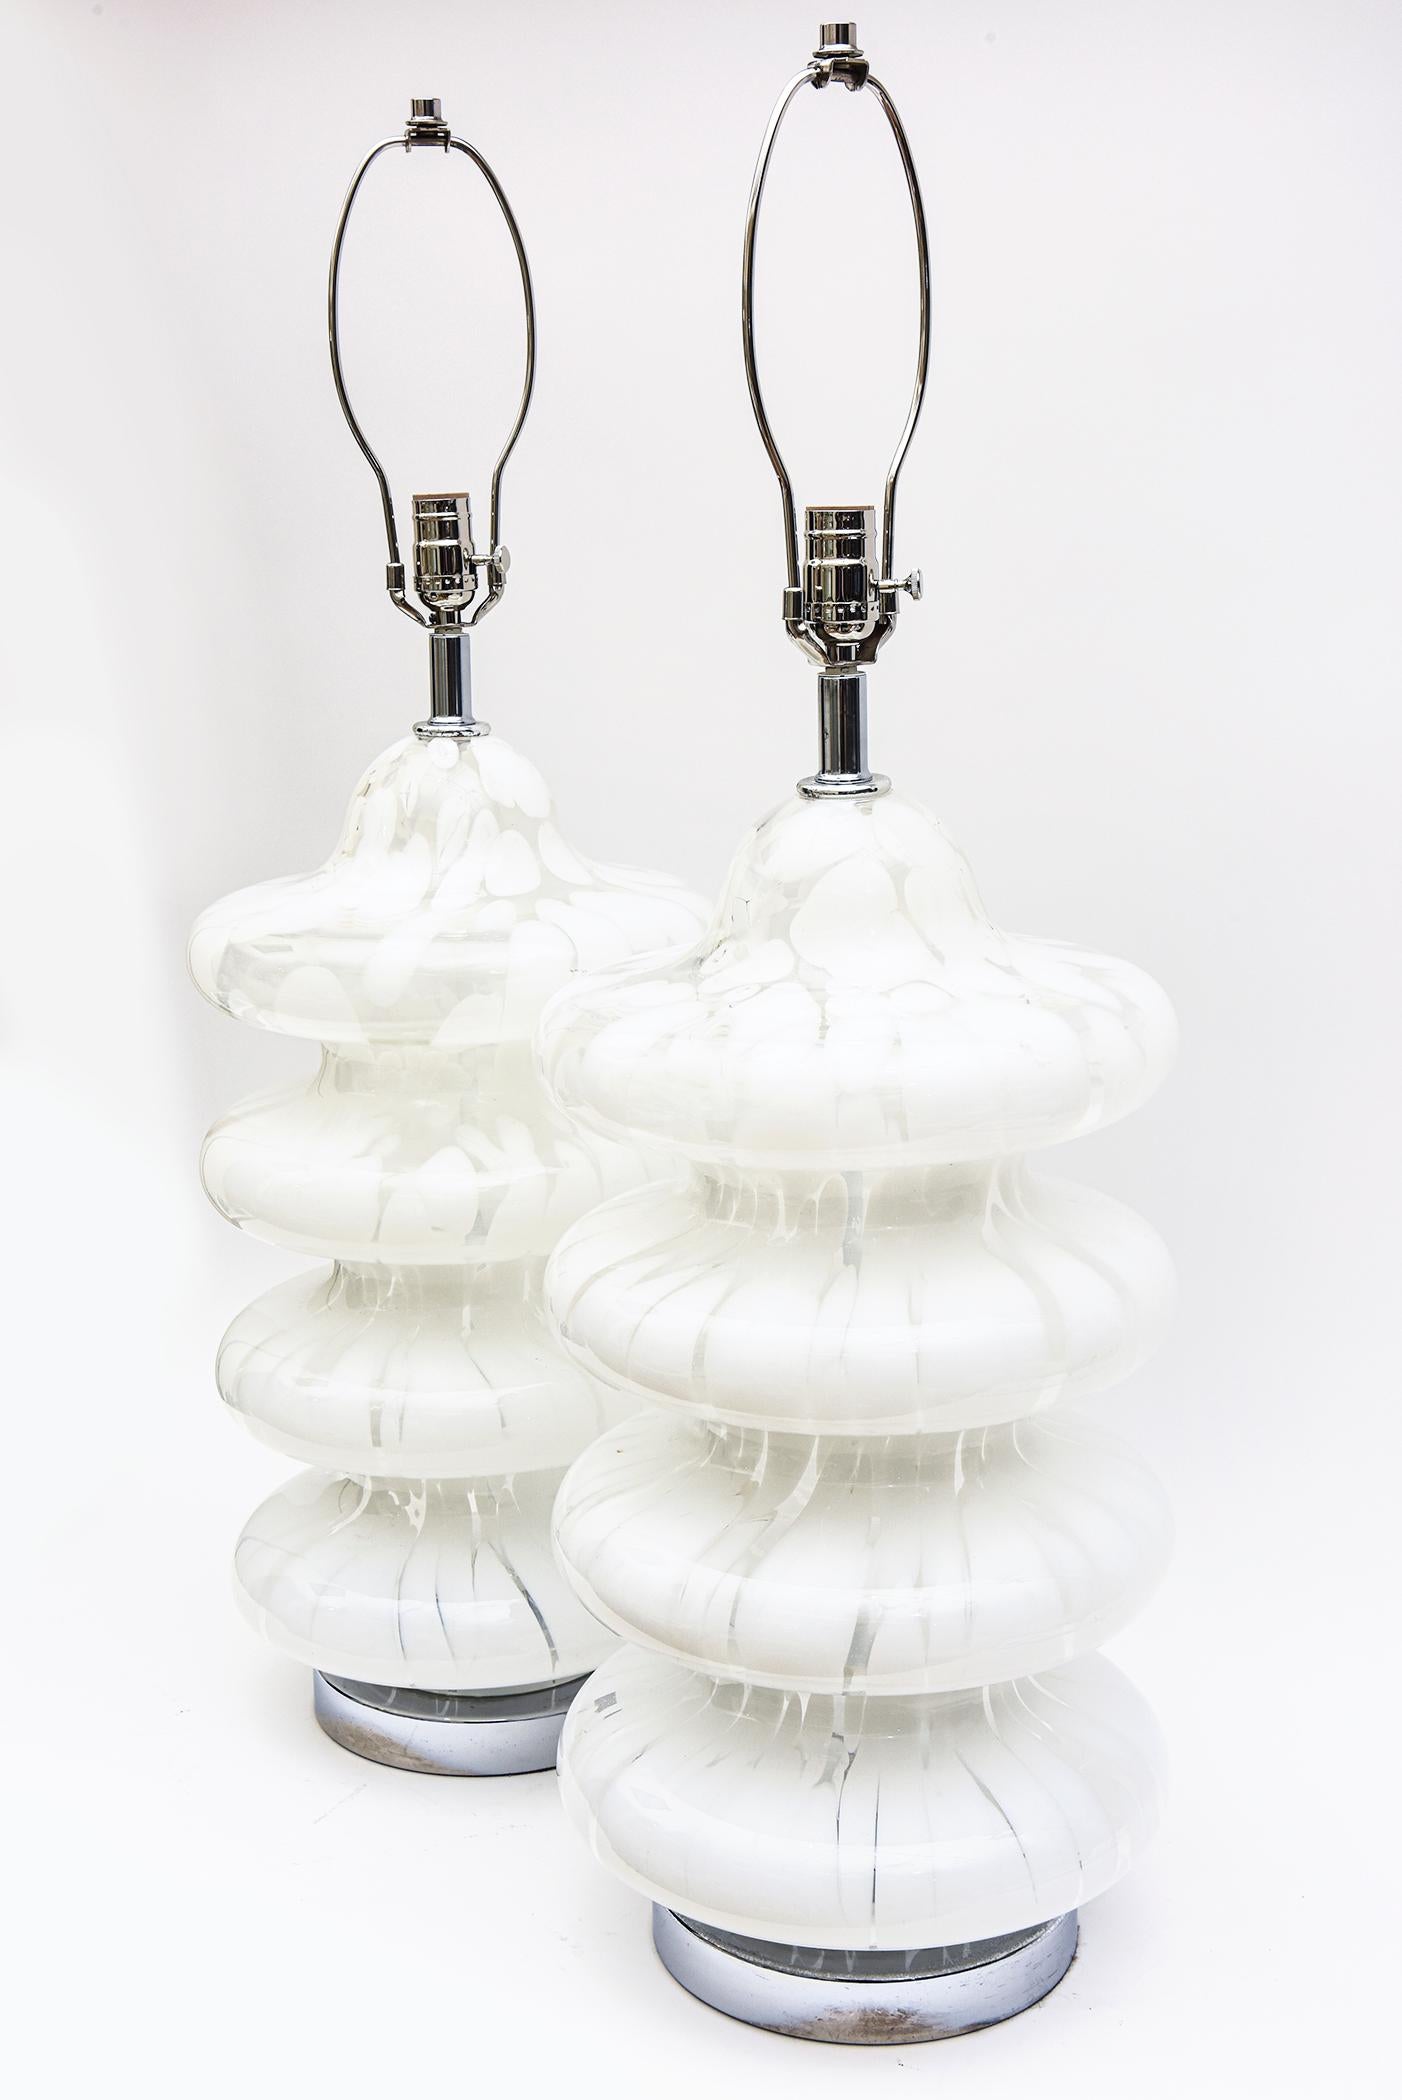 Diese italienischen 1970er Jahre Carlo Nason für Mazzega 4 Tier Murano mundgeblasenen Lampen sind abstrakte Muster von gesprenkelt und zufällige wirbelt von weißen und klaren Glas. Sie werden auch als Pagodenlampen bezeichnet und sind sehr ikonisch.